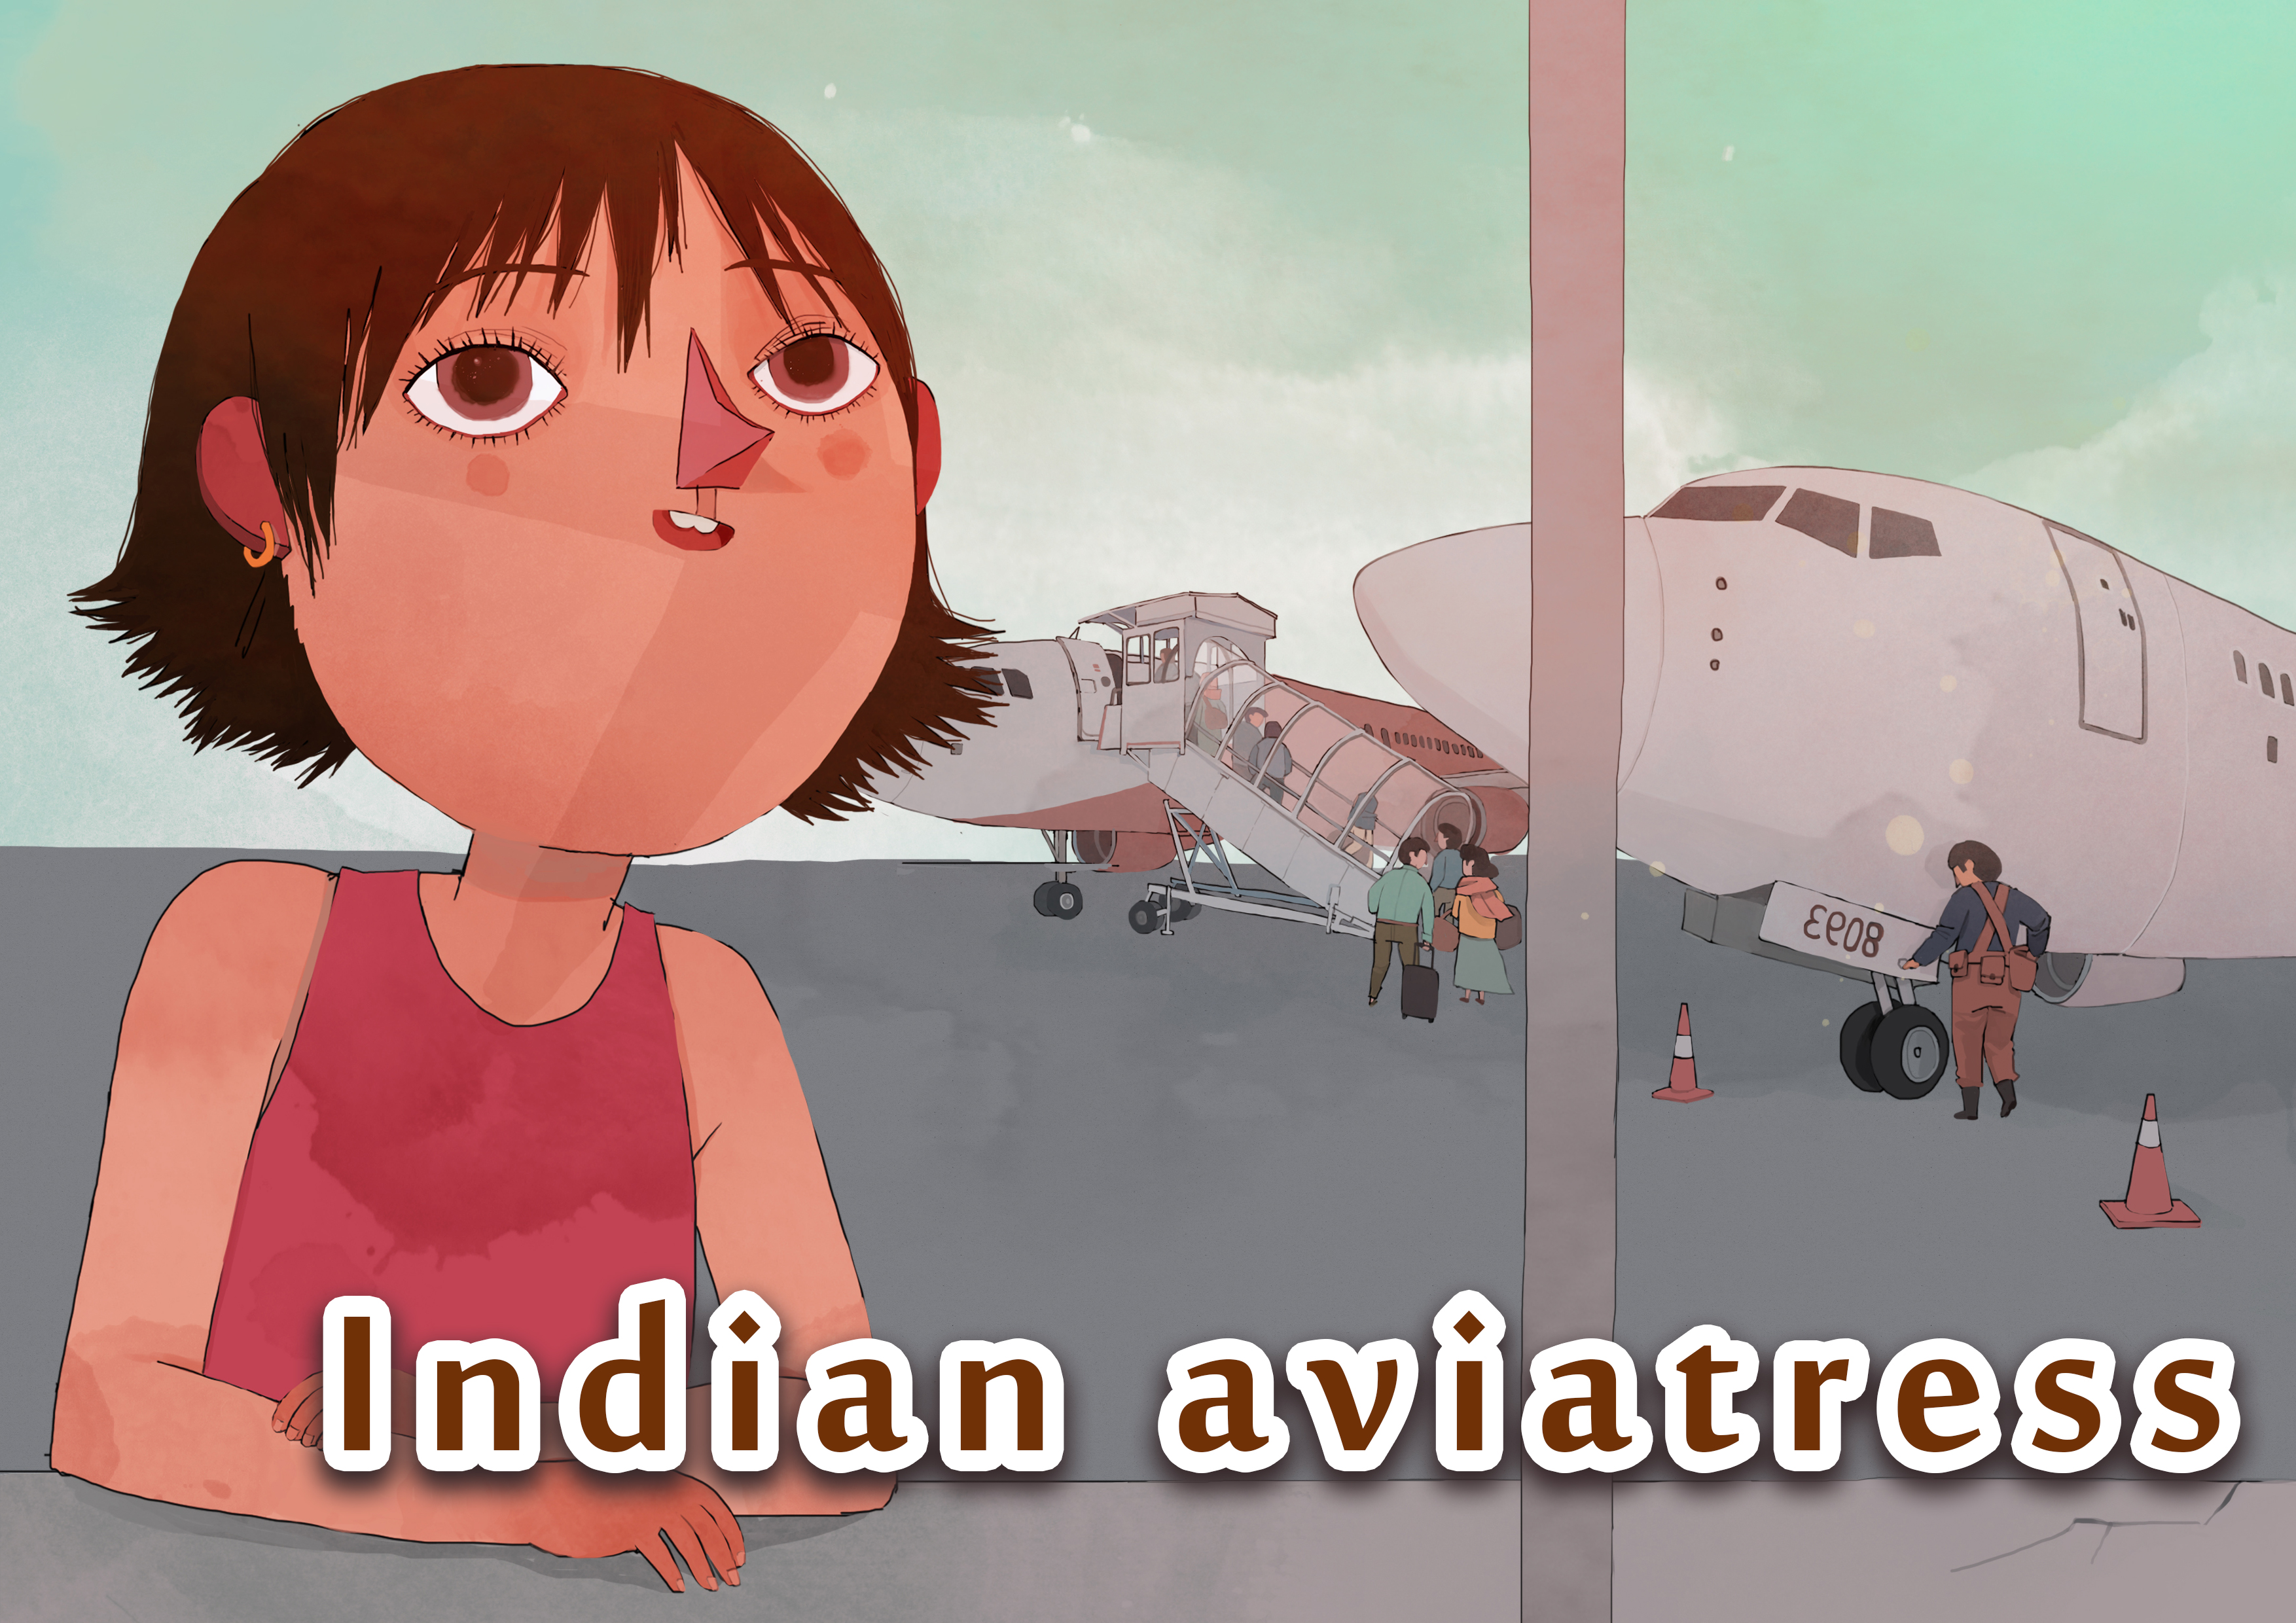 Indian aviatress